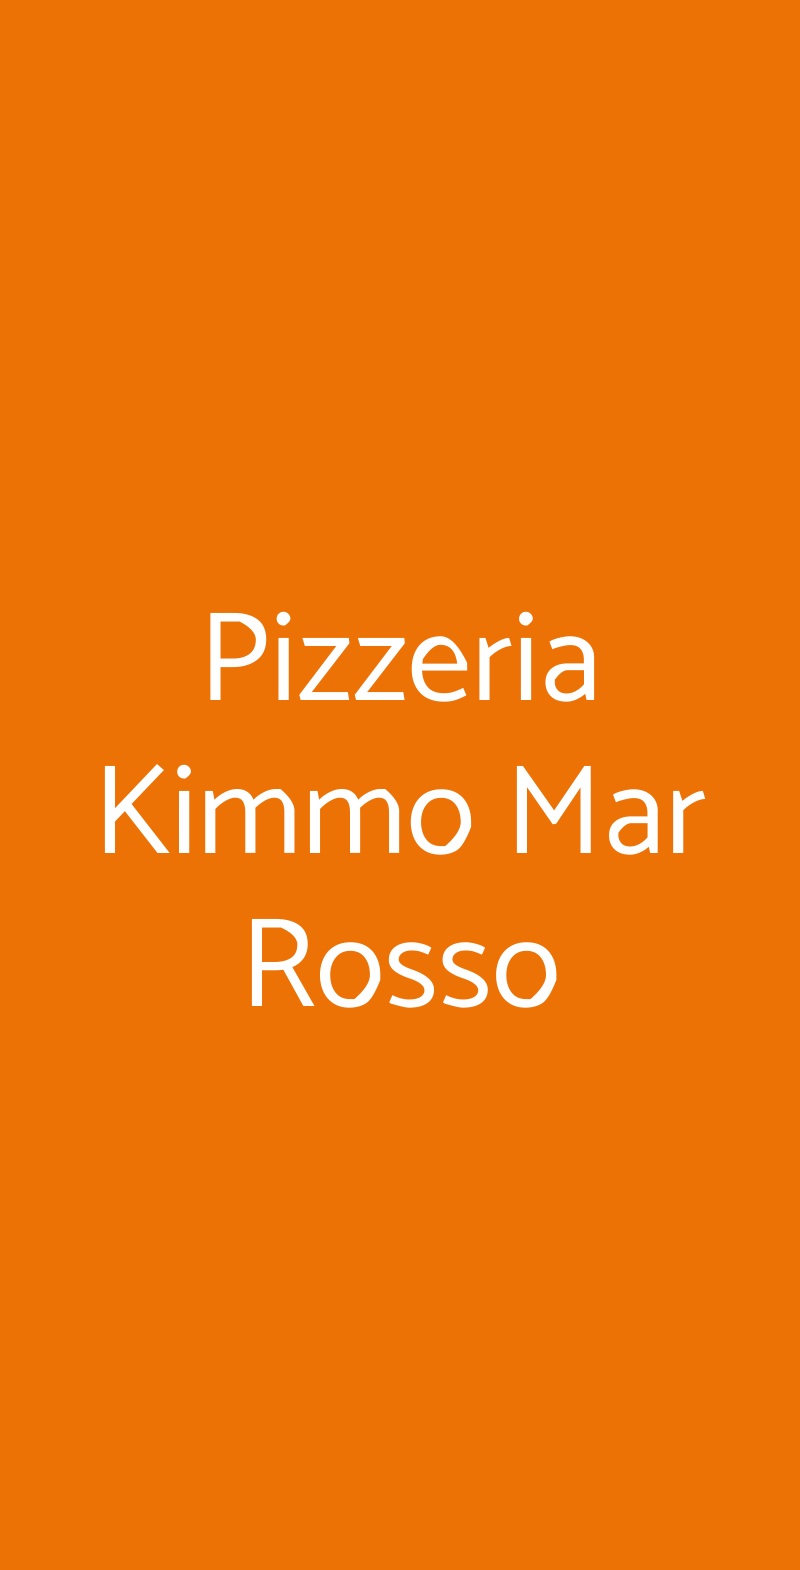 Pizzeria Kimmo Mar Rosso Busto Arsizio menù 1 pagina